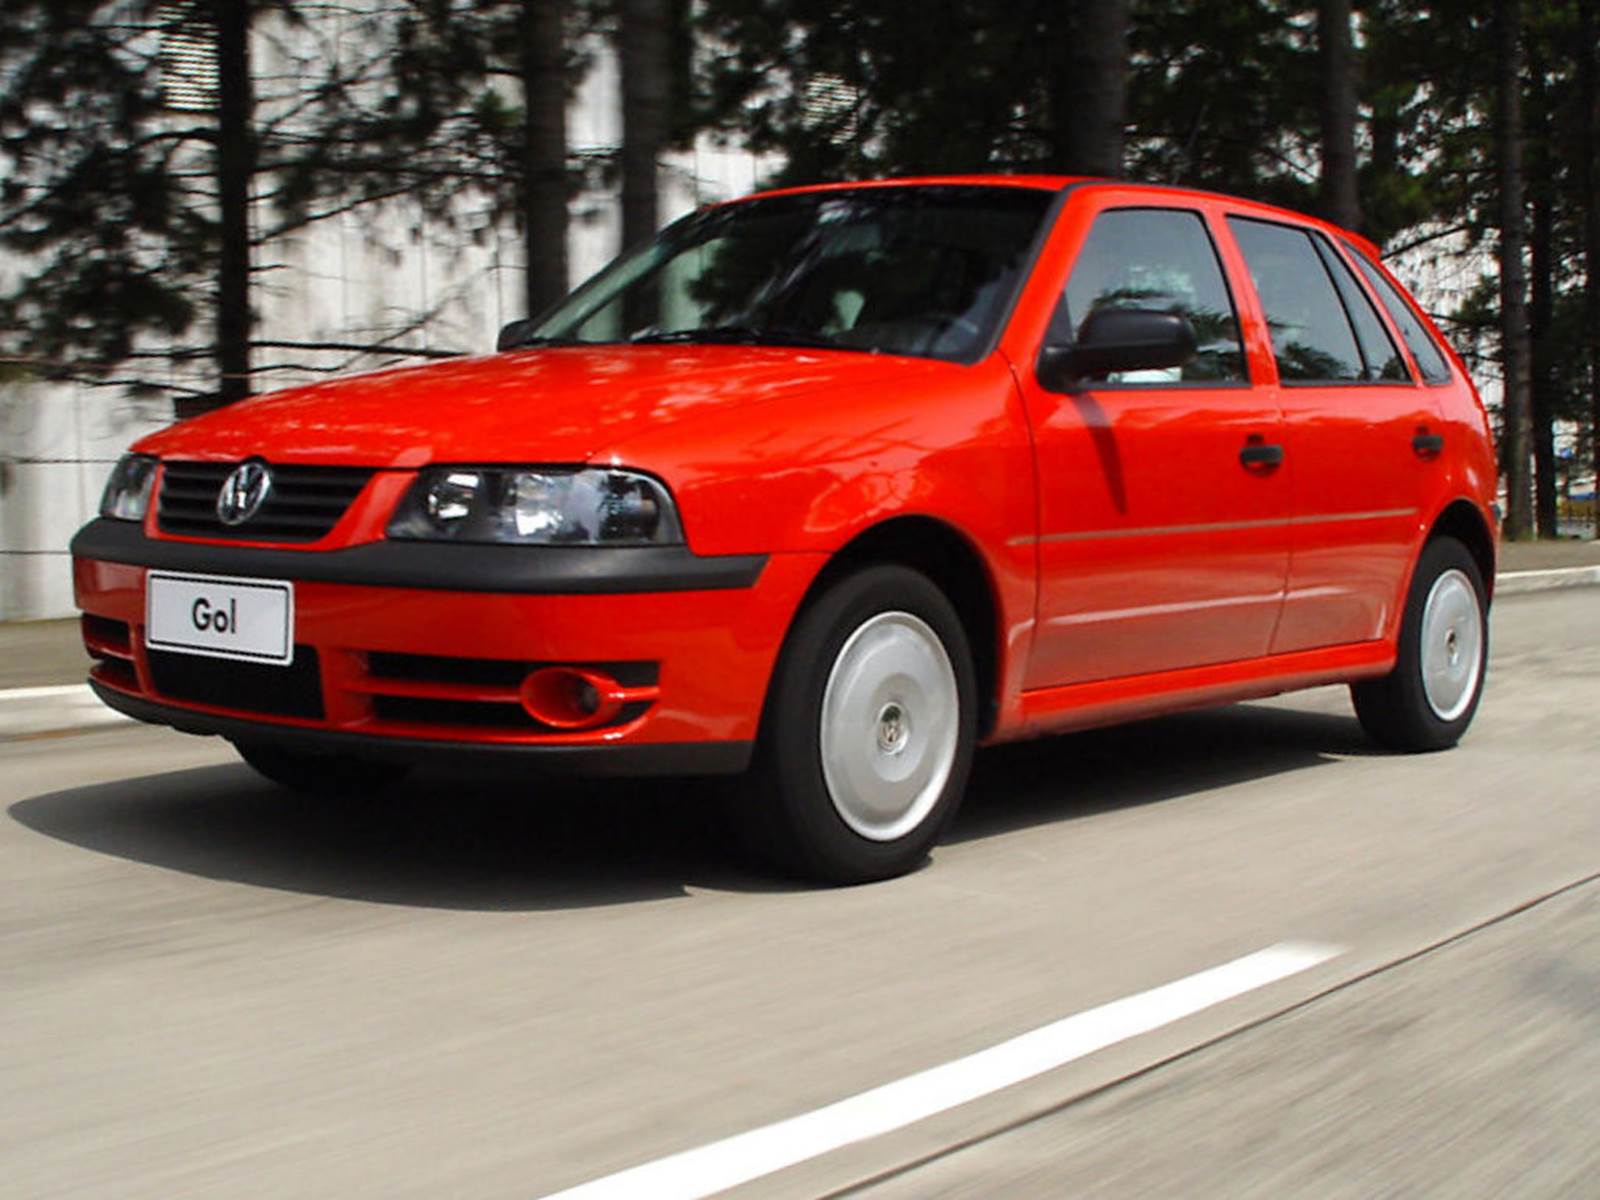 VW Gol 2004 Total-Flex